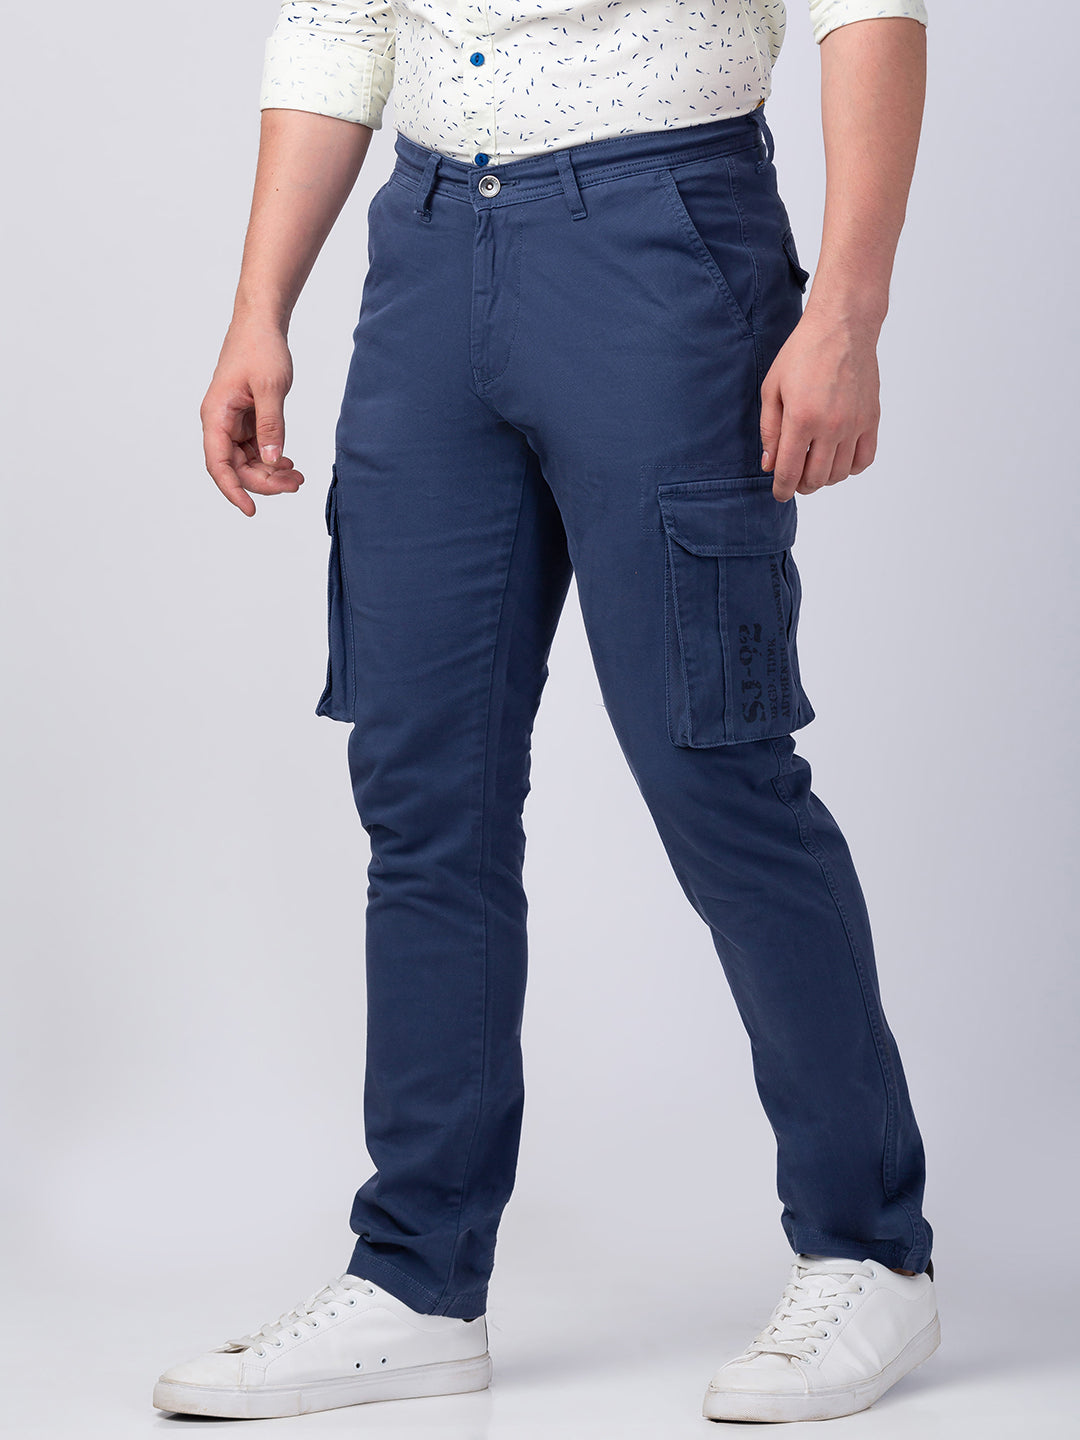 NAMANYLE Mens Sweatpants Cargo Pants Men Fashion Mens Cotton India | Ubuy